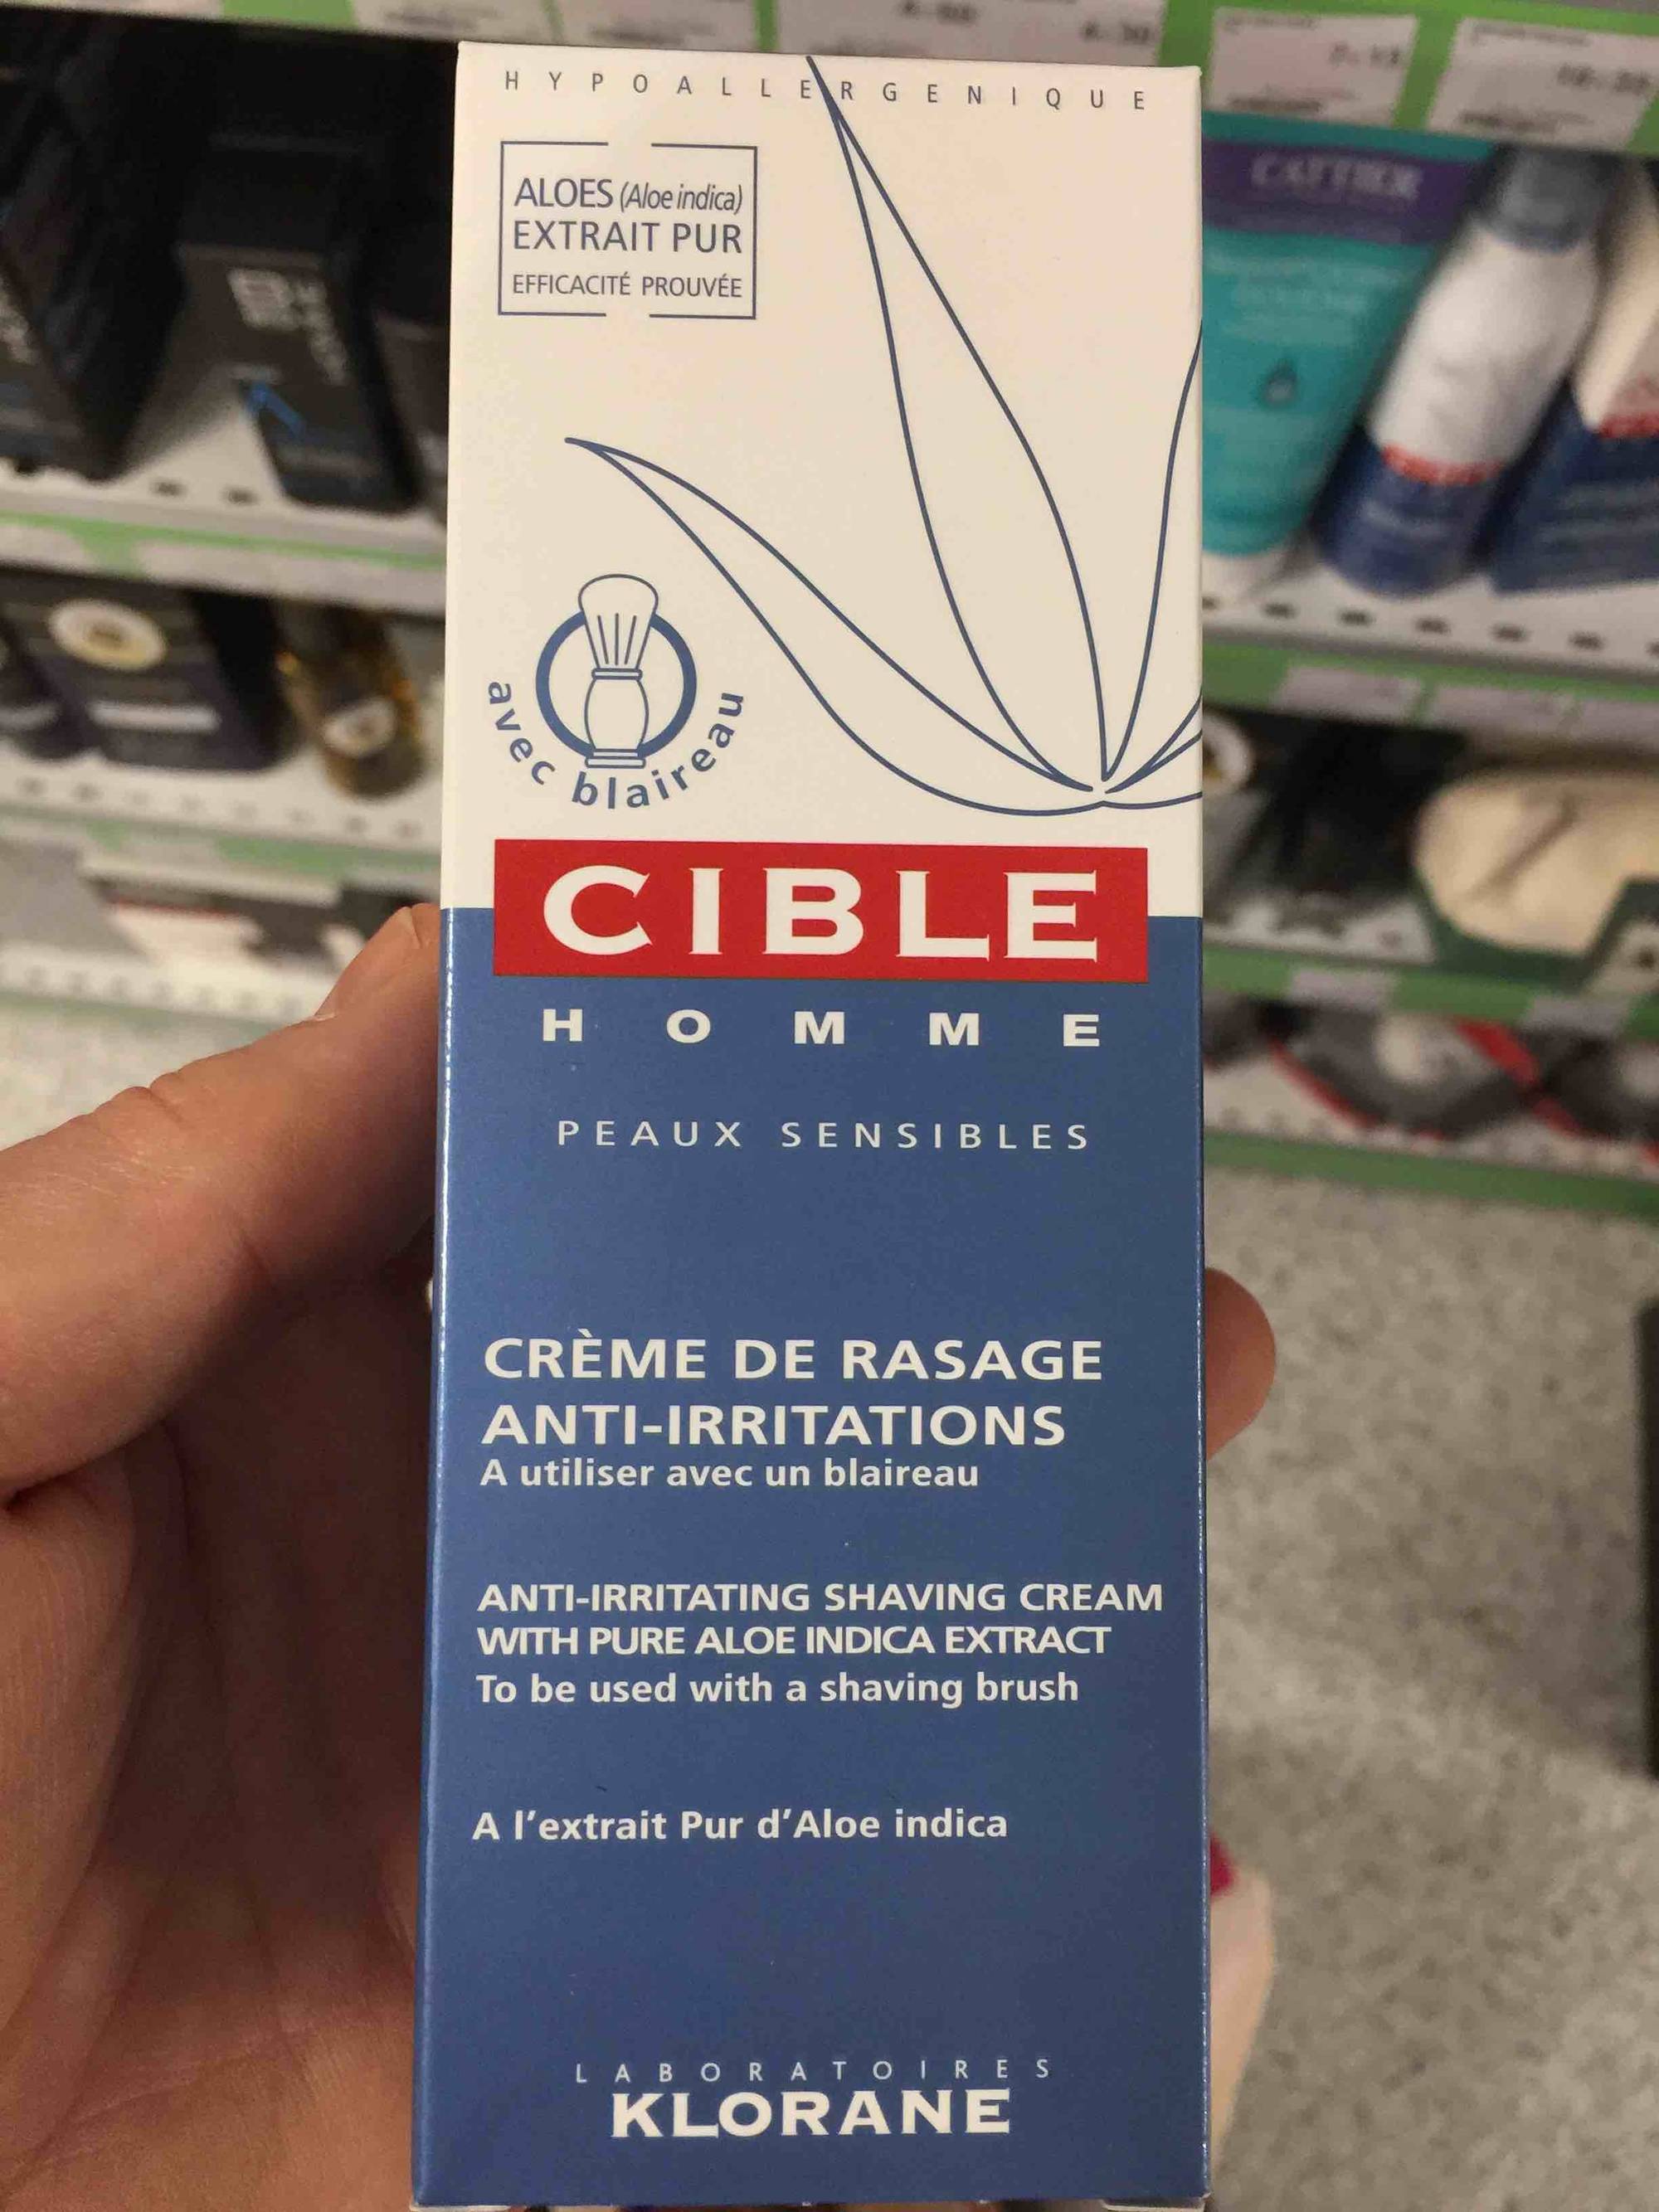 KLORANE - Cible homme - Crème de rasage anti-irritations